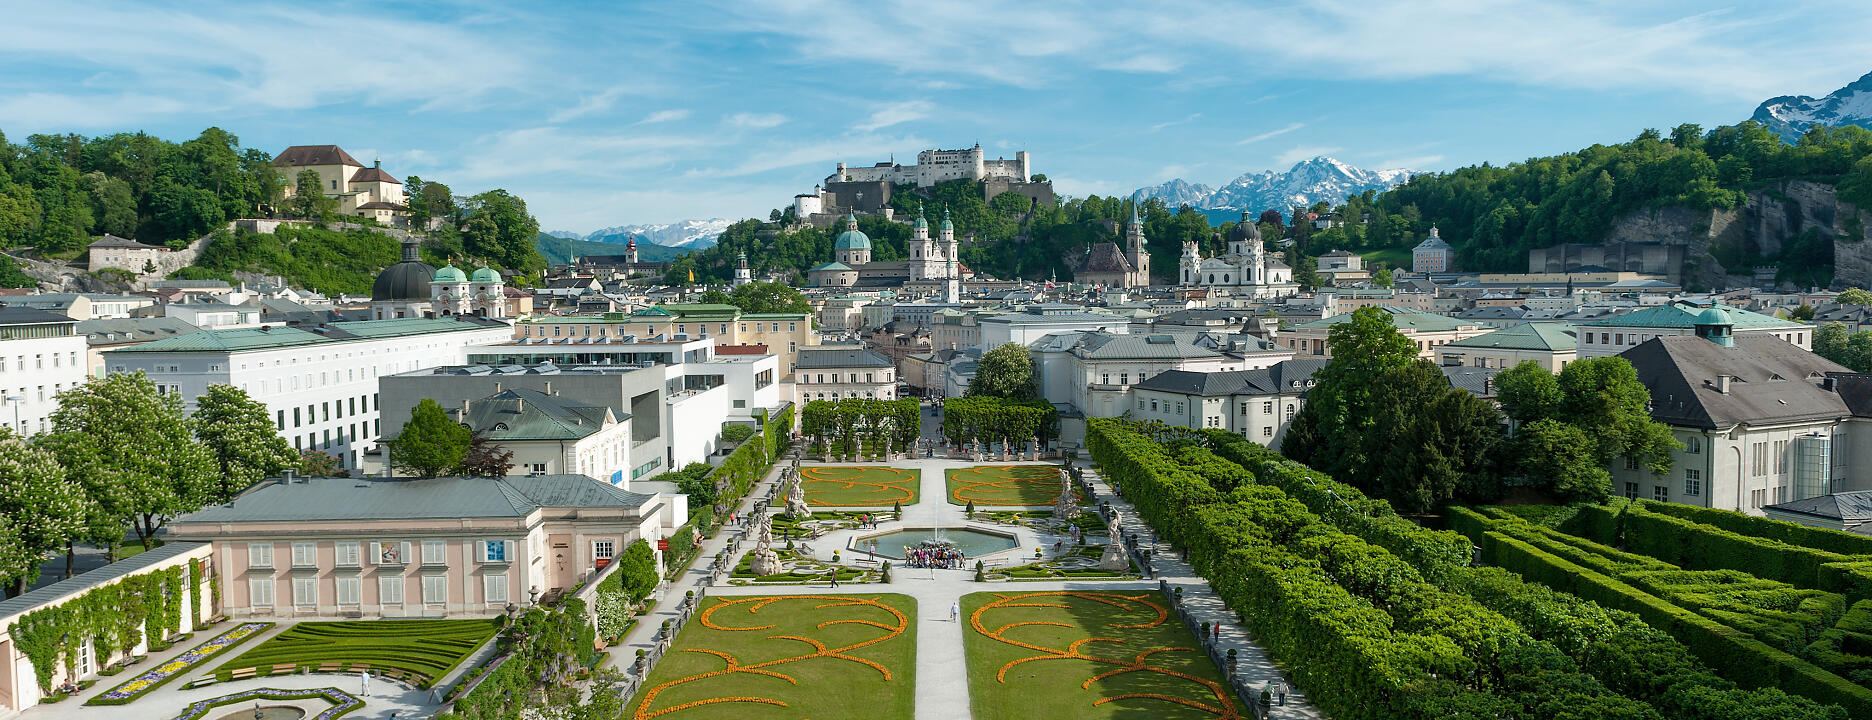 Stadt Salzburg Panorama Mirabell garden